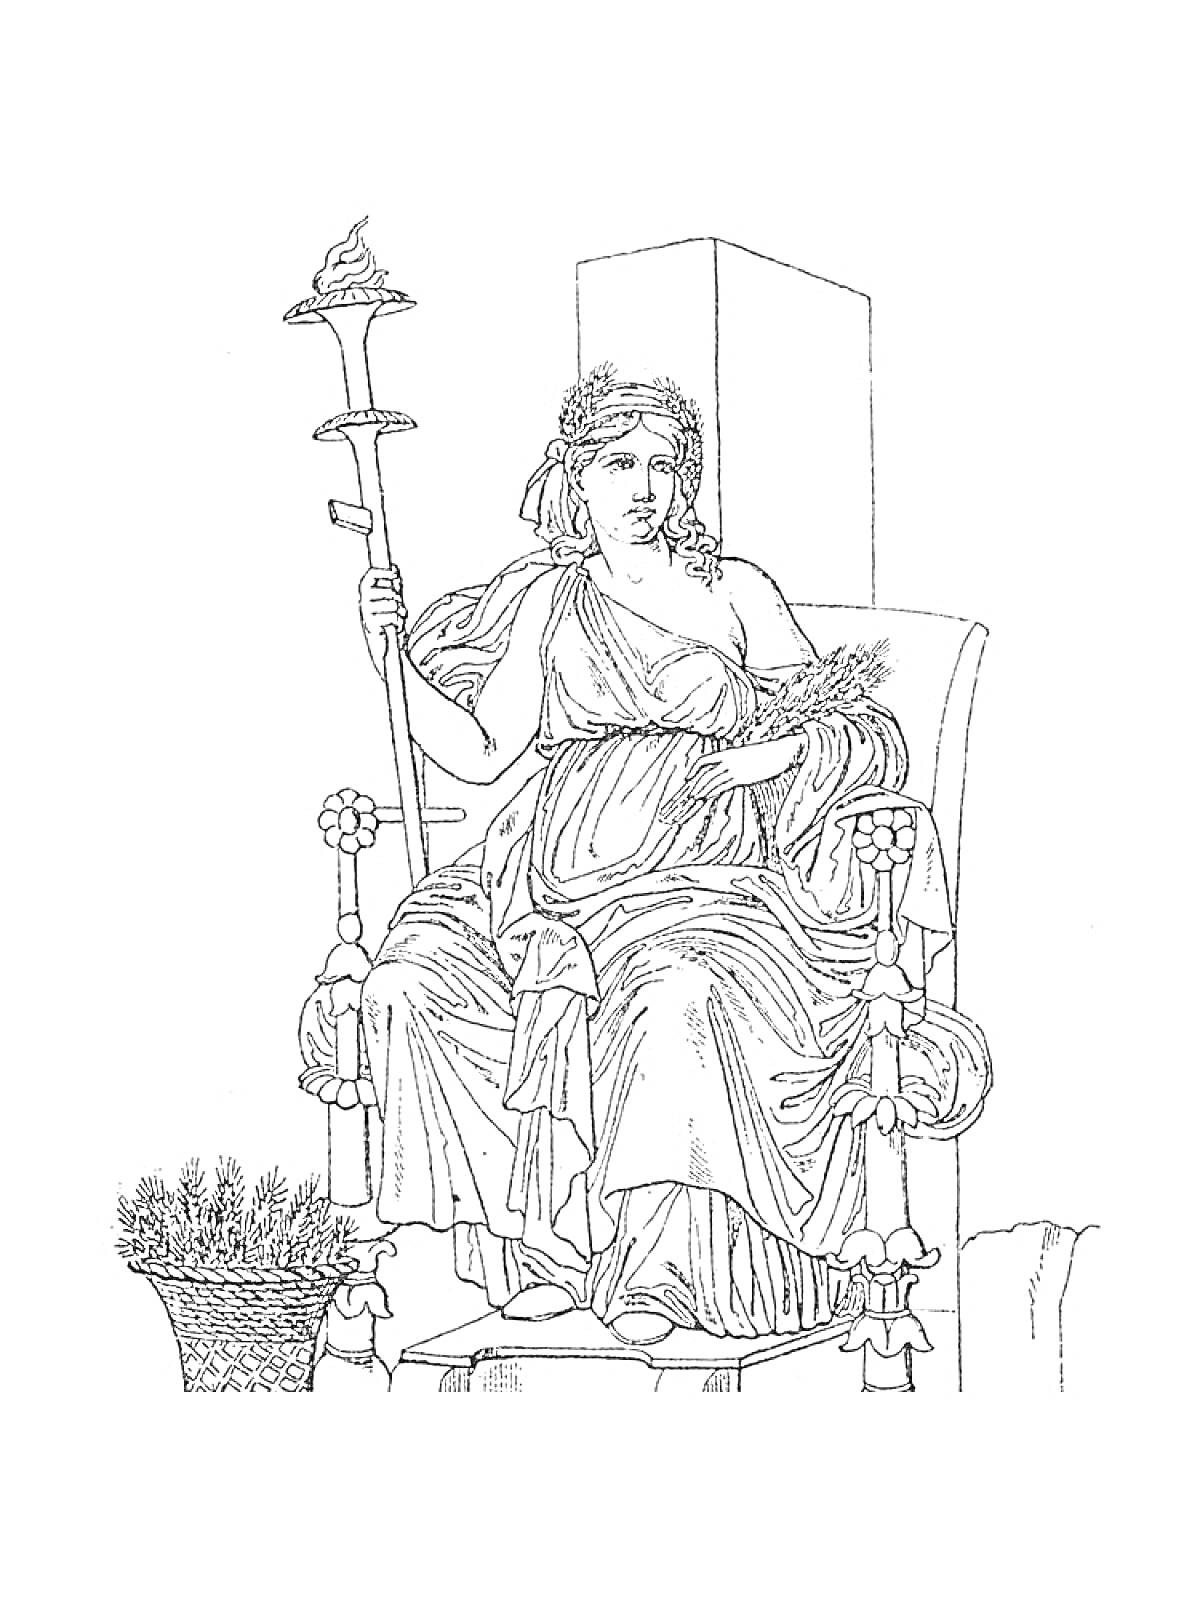 Богиня на троне с факелом и колосьями пшеницы